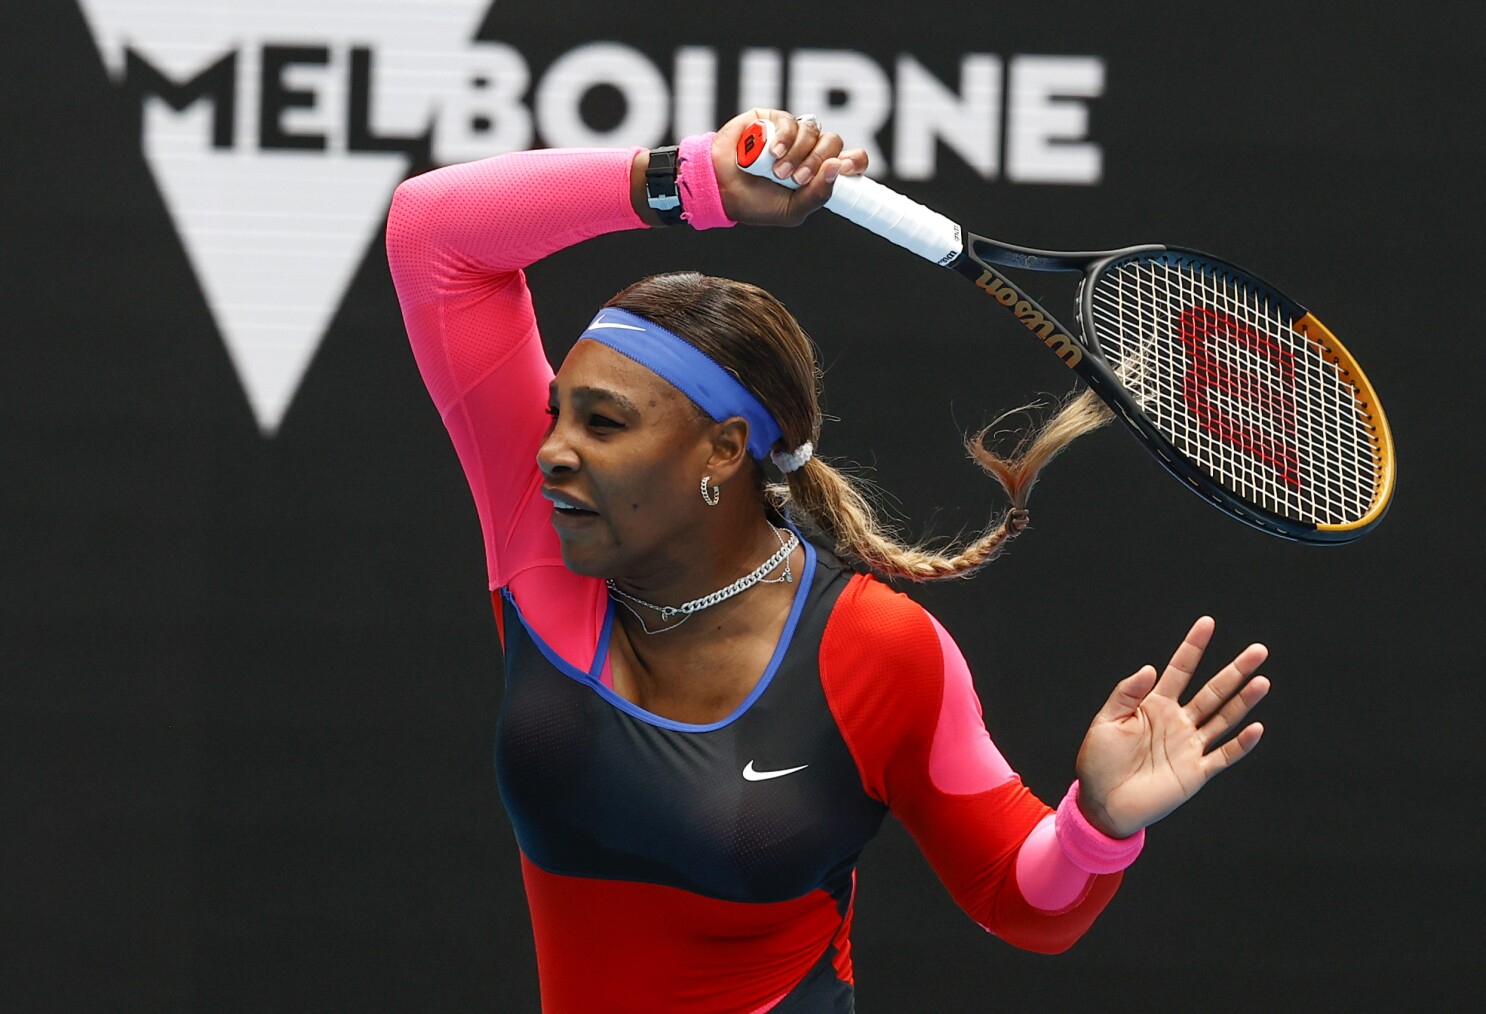 Serena Williams, Naomi Osaka win matches at Open - Los Angeles Times